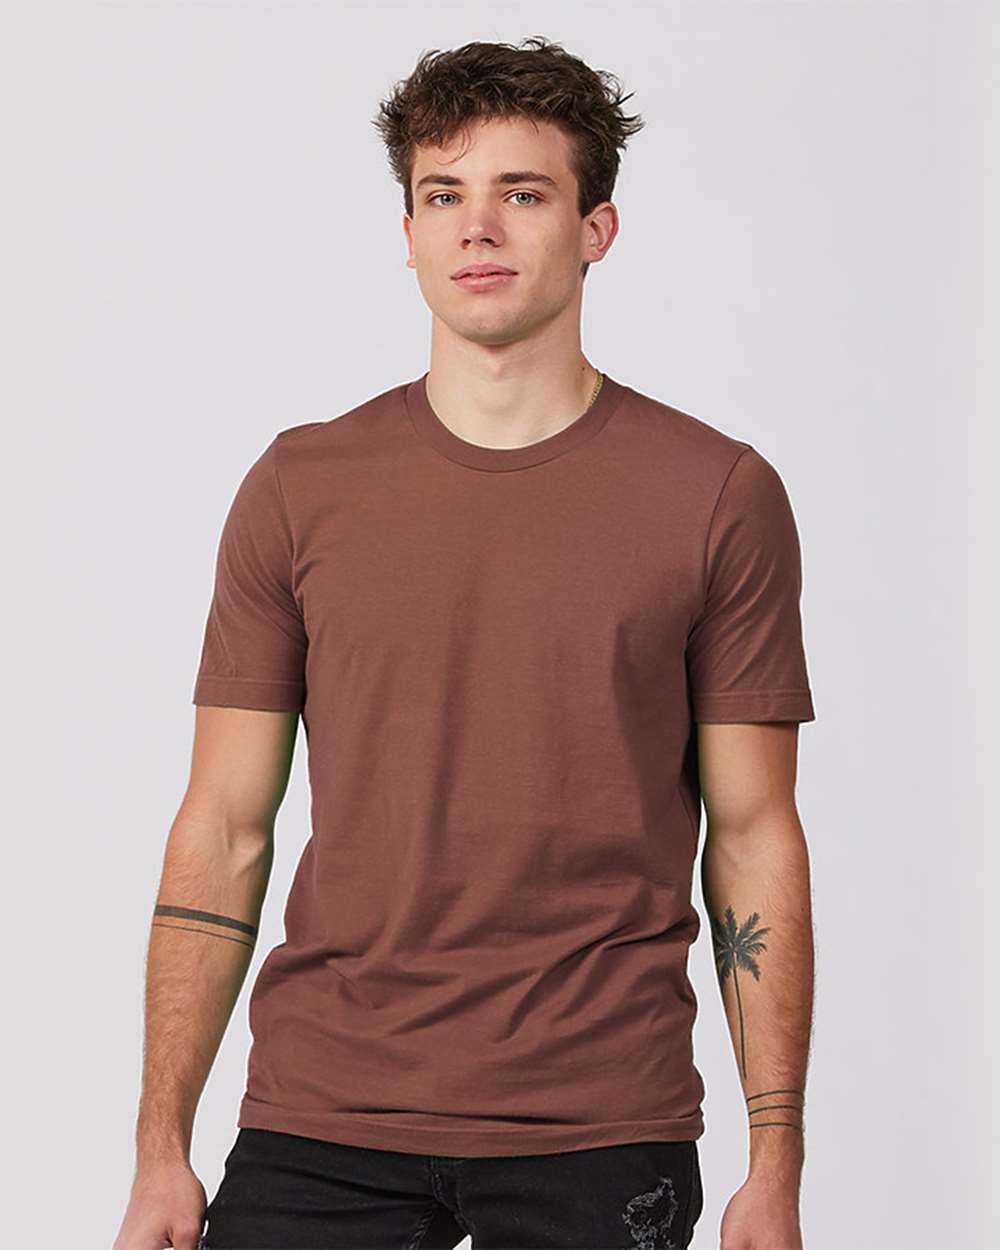 Tultex 502 Premium Cotton T-Shirt - Mauve - HIT a Double